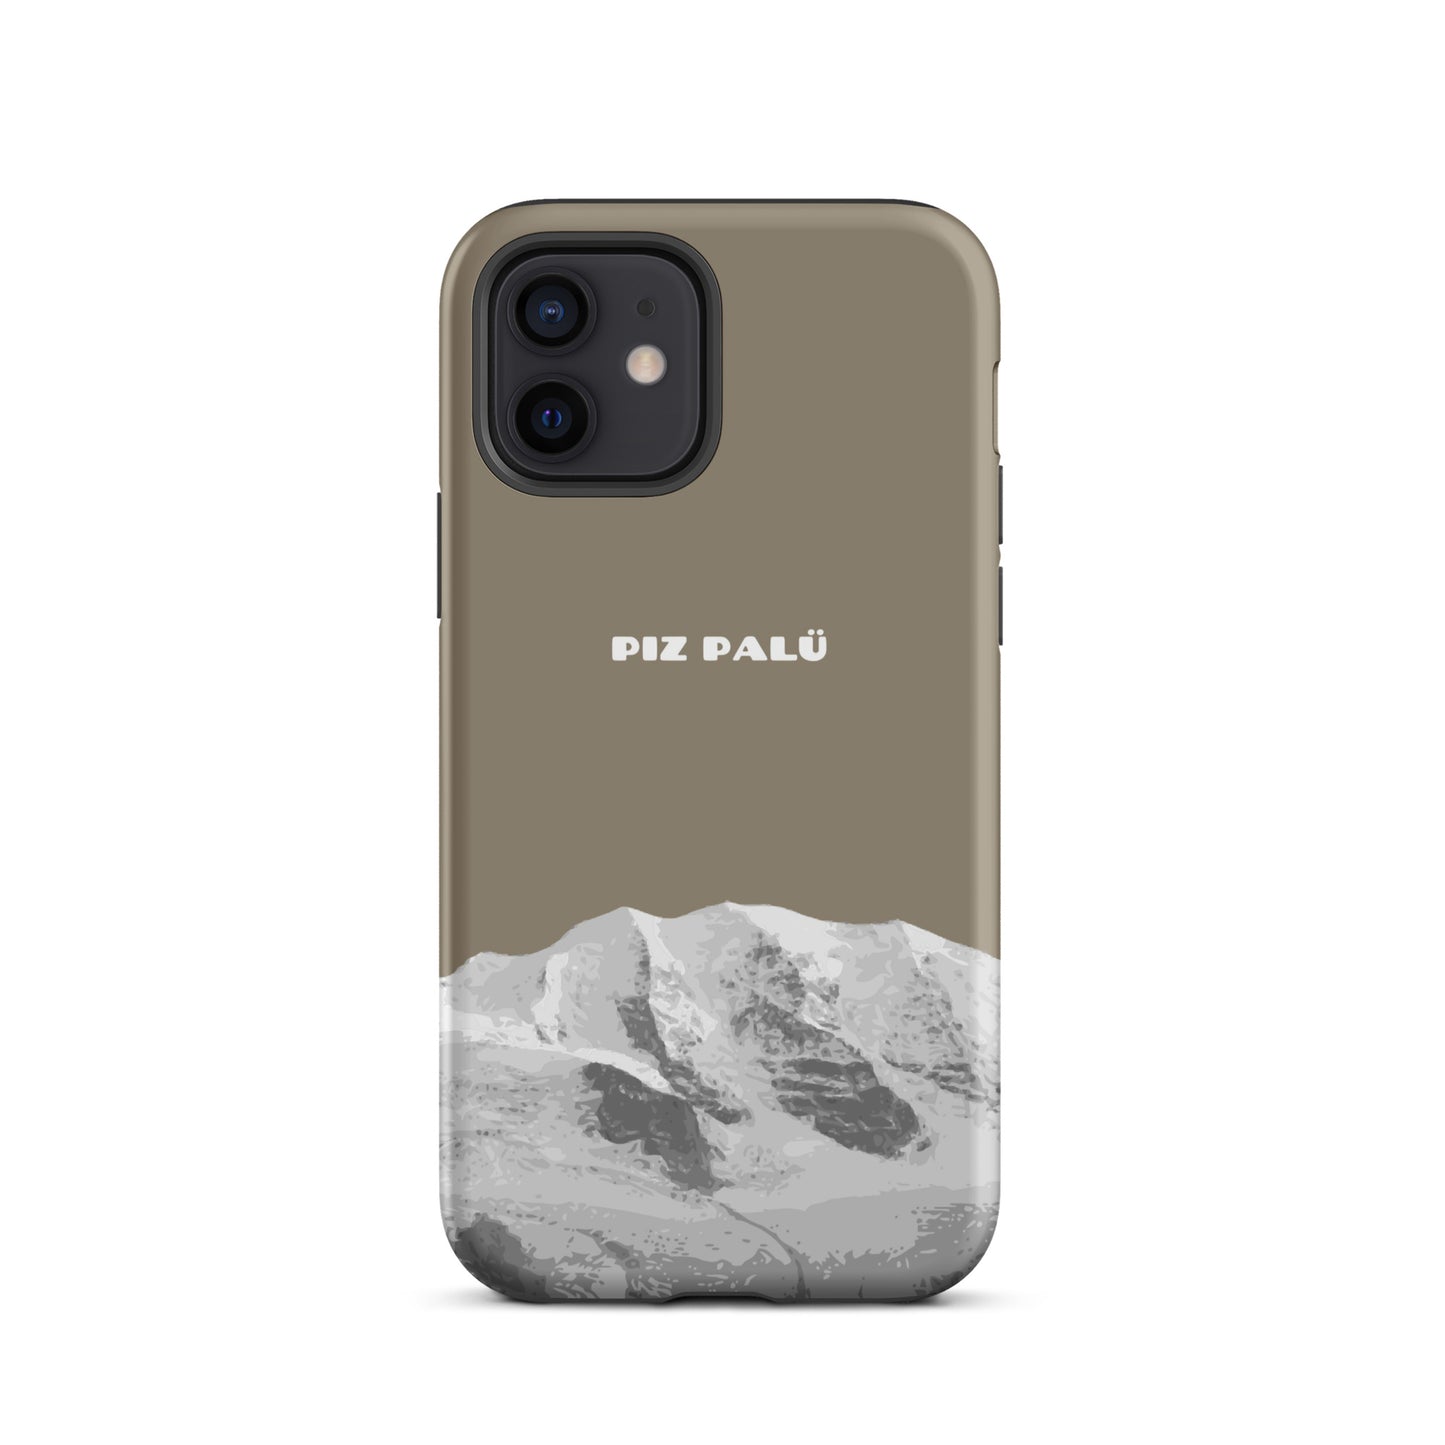 Hülle für das iPhone 12 von Apple in der Farbe Graubrau, dass den Piz Palü in Graubünden zeigt.